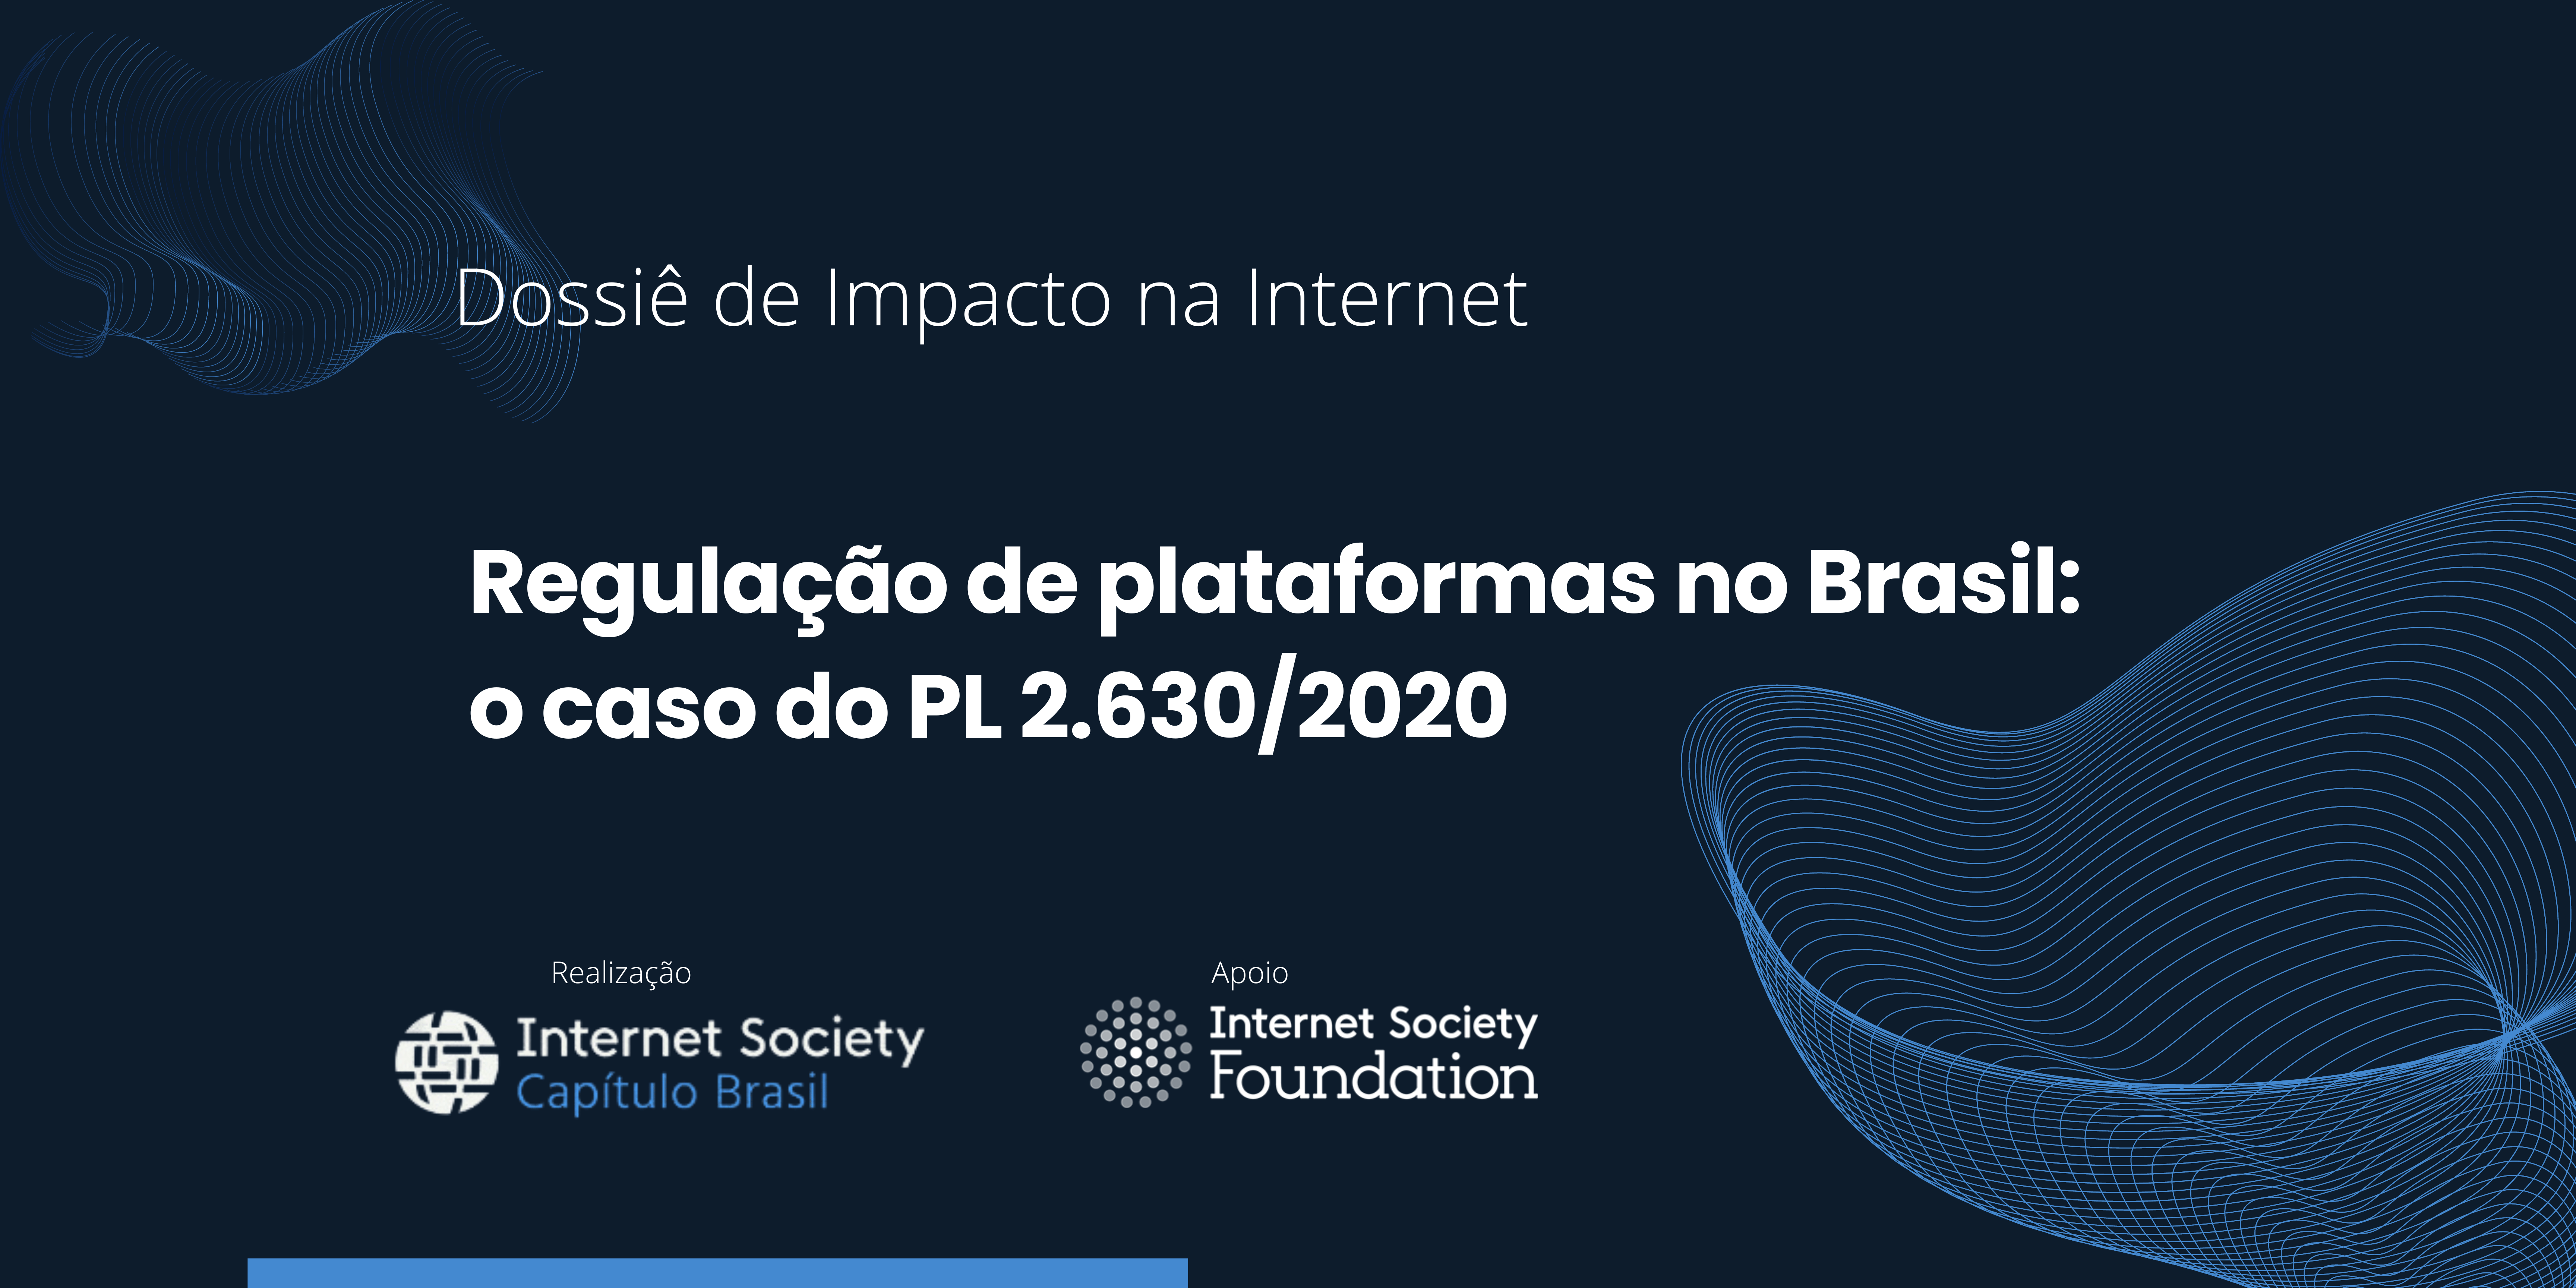 Dossiê de Impacto: Regulação de plataformas no Brasil: o caso do PL 2.630/2020